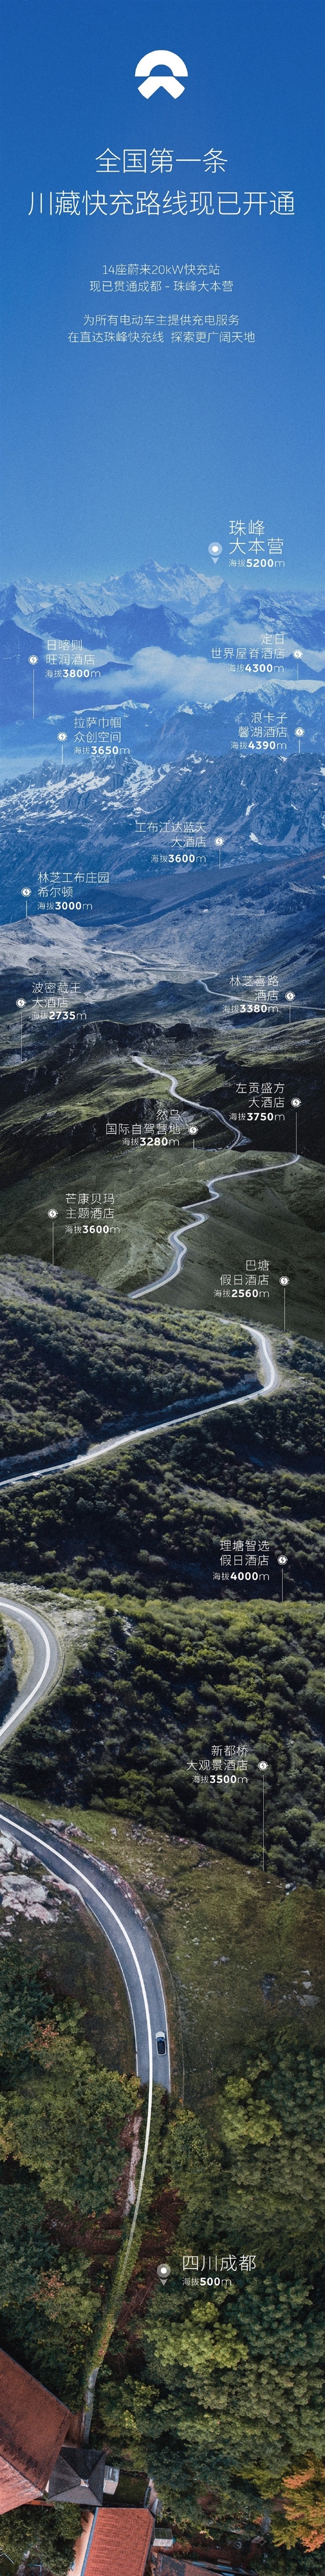 蔚来成功打通全国第一条川藏快充路线：直达海拔5200米珠峰大本营